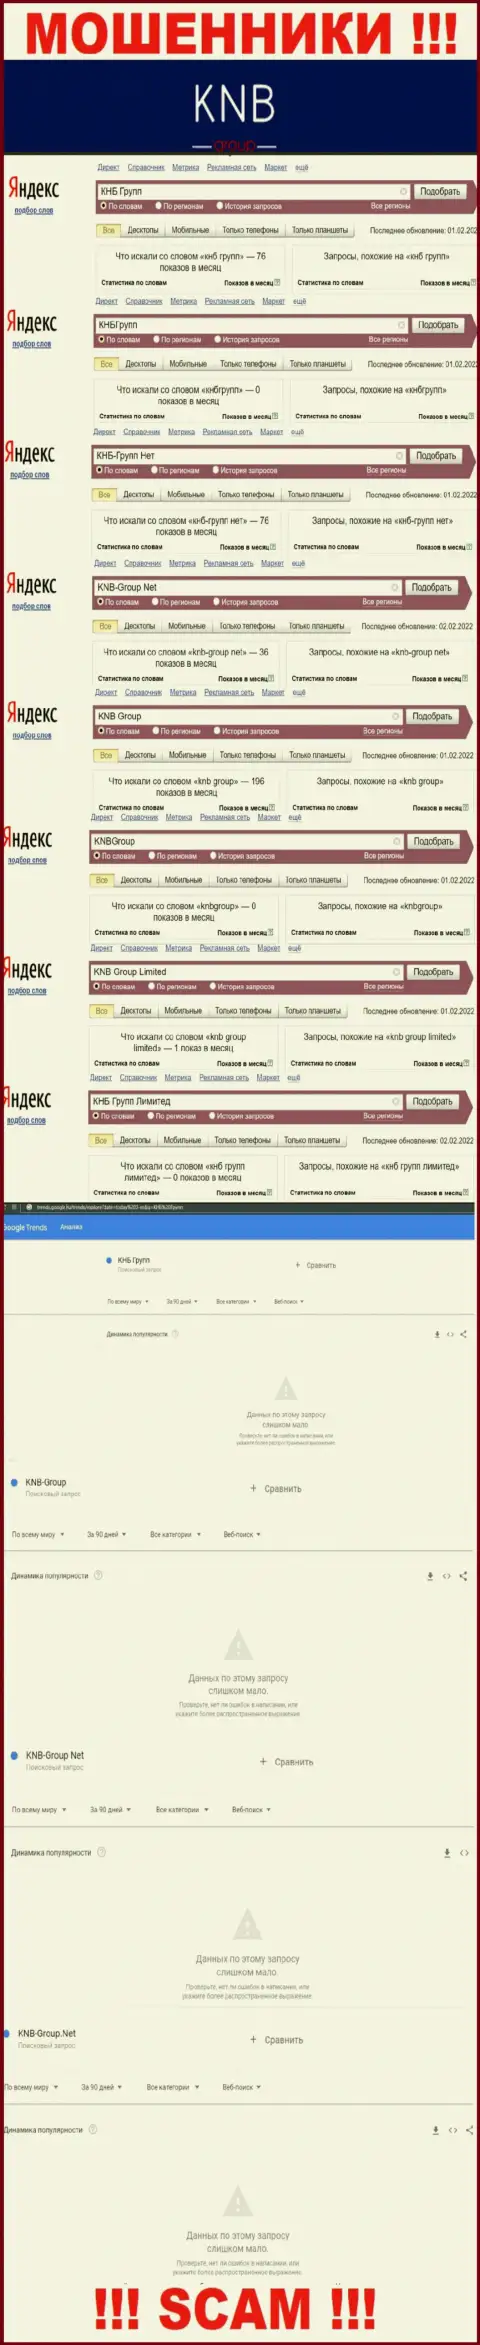 Скриншот статистики online-запросов по противоправно действующей конторе КНБ Групп